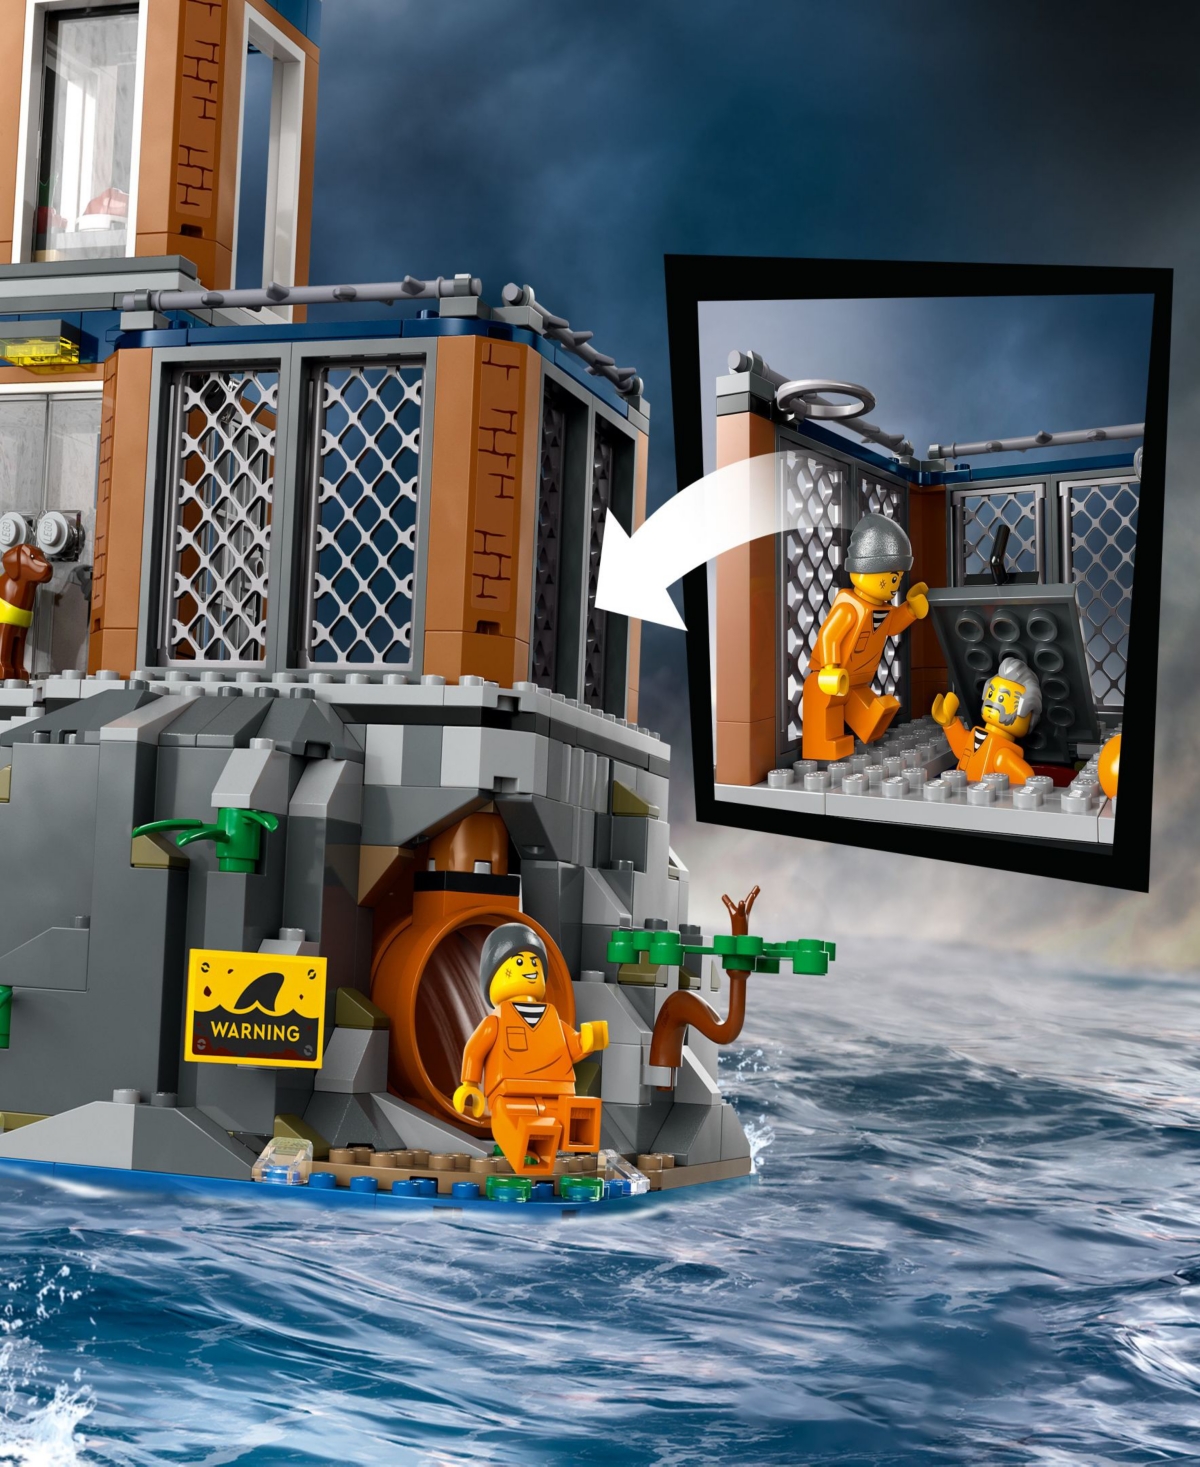 Shop Lego City Police Prison Island Building Toy 60419, 980 Pieces In Multicolor